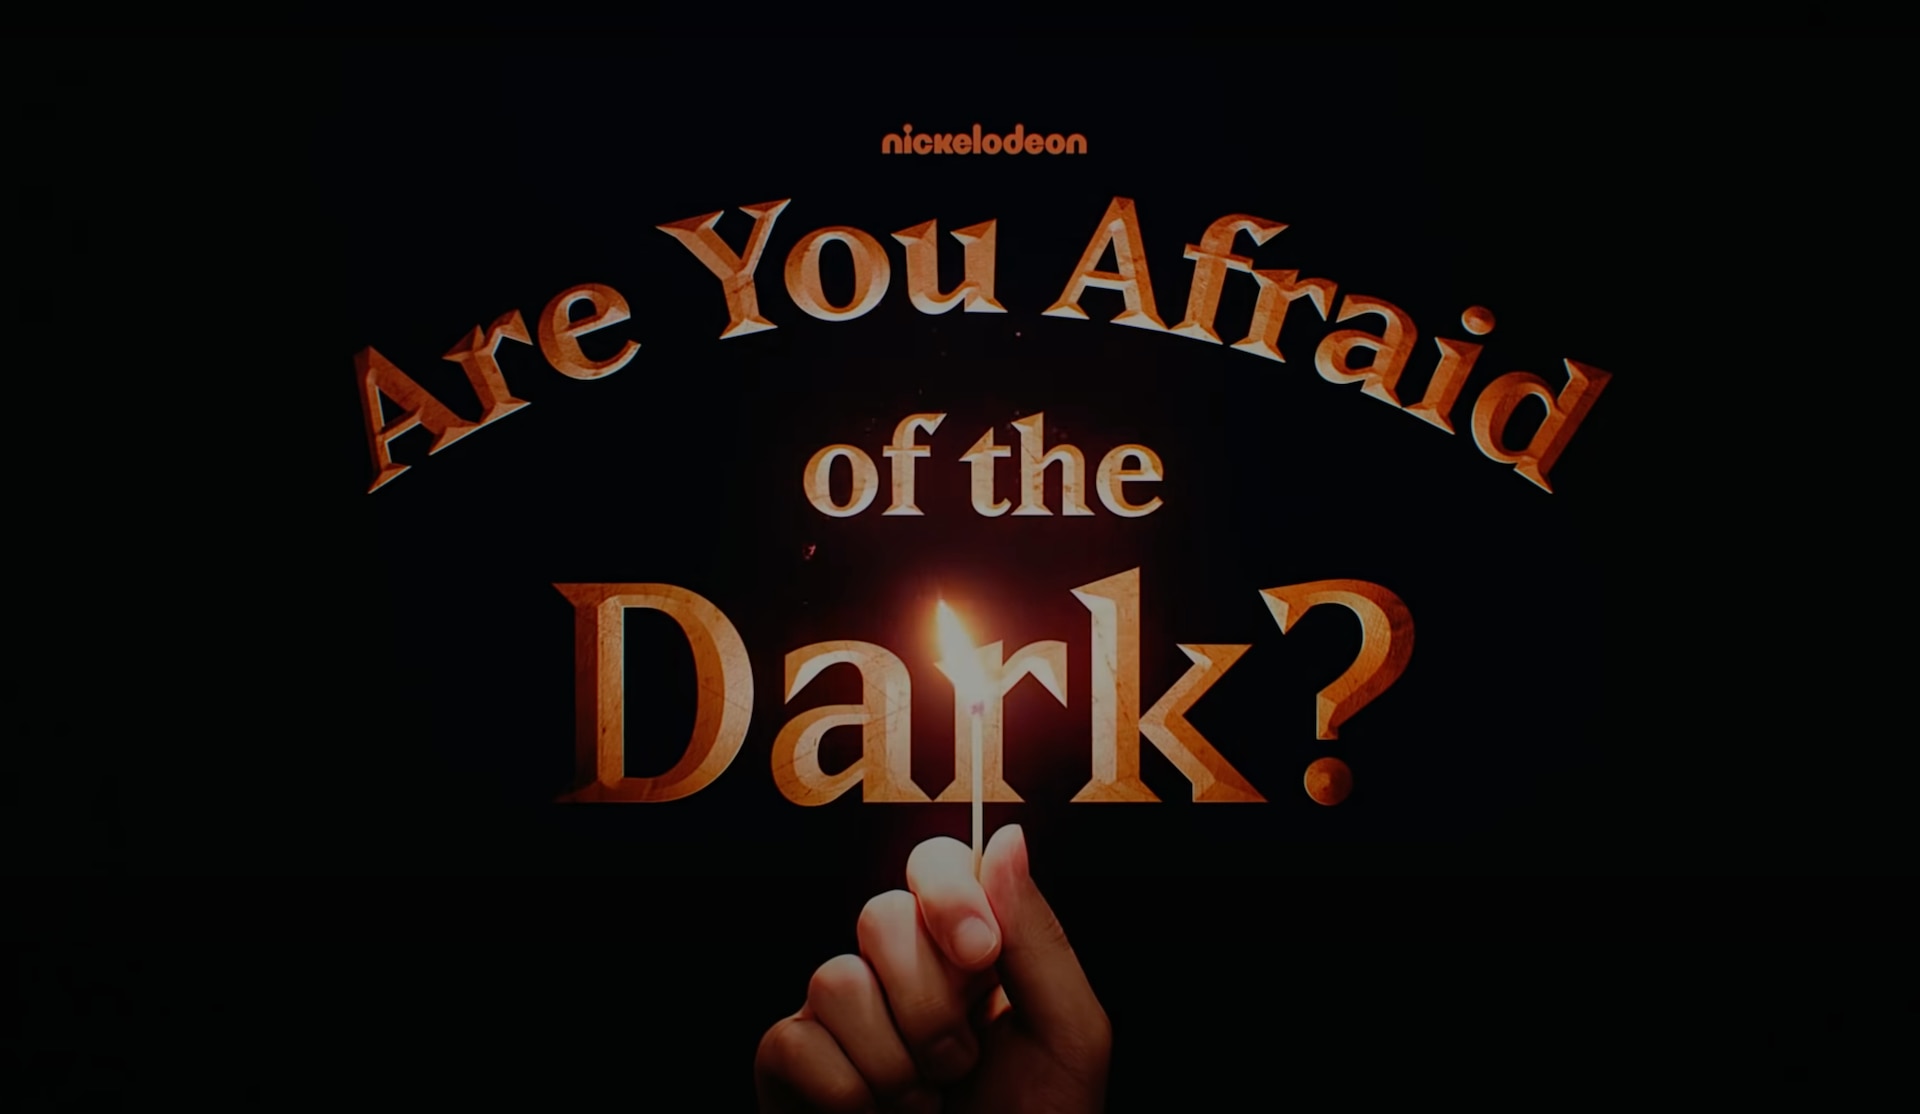 Are You Afraid of the Dark? show logo